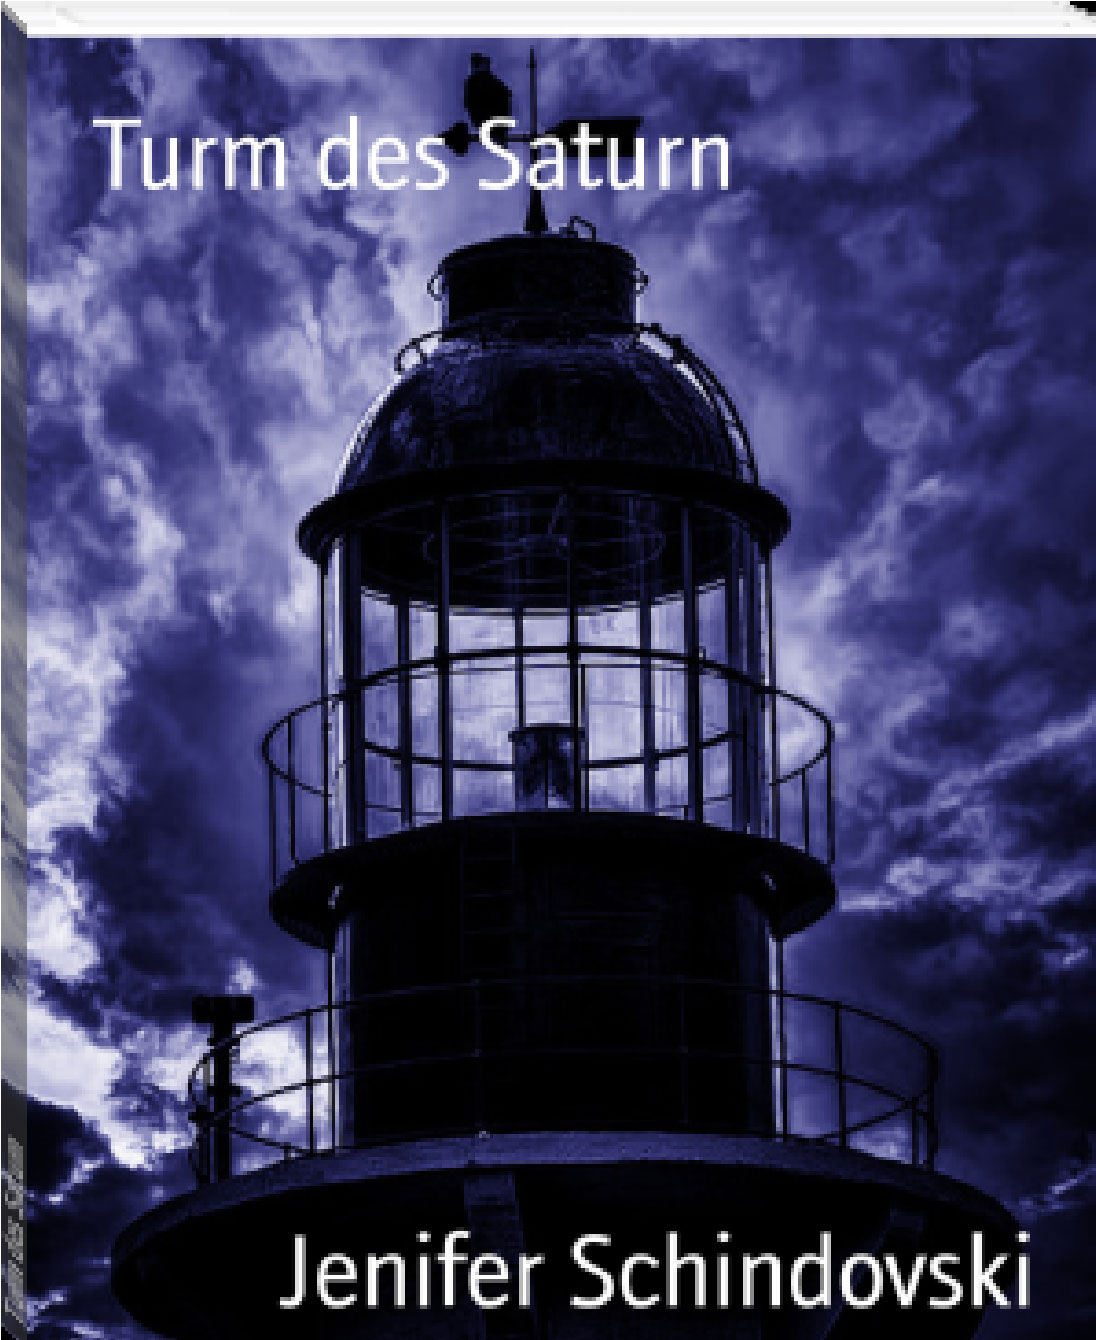 Turm des Saturn rendition image